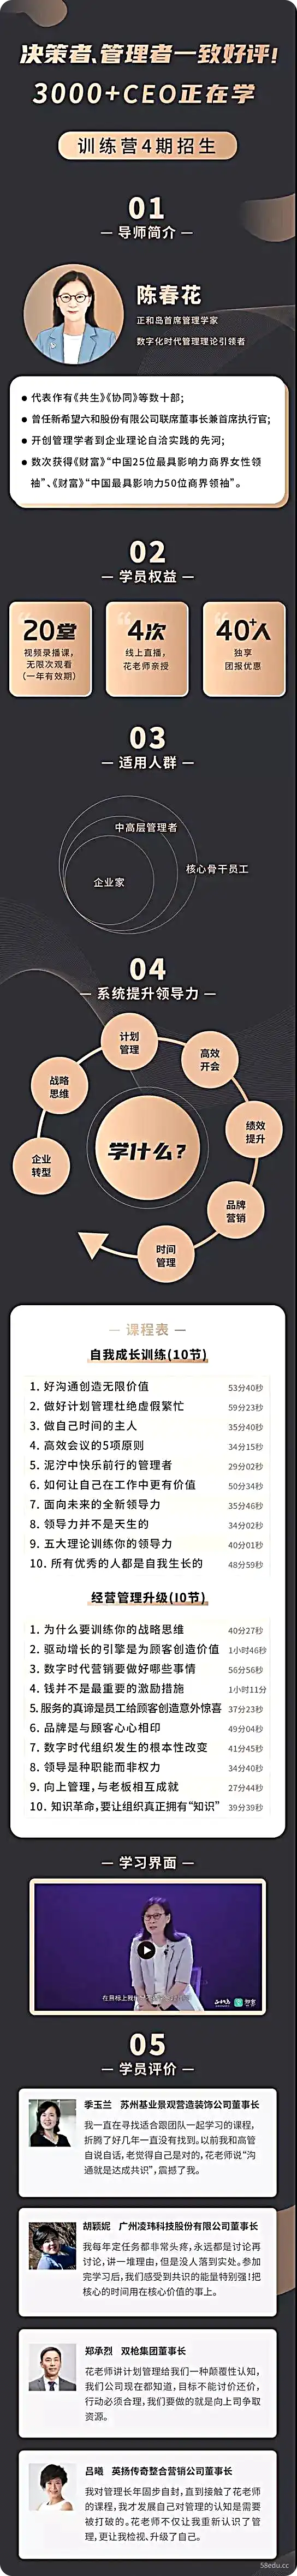 陈春花中国企业数字化转型必修课《数字化时代的管理训练》-不可思议资源网